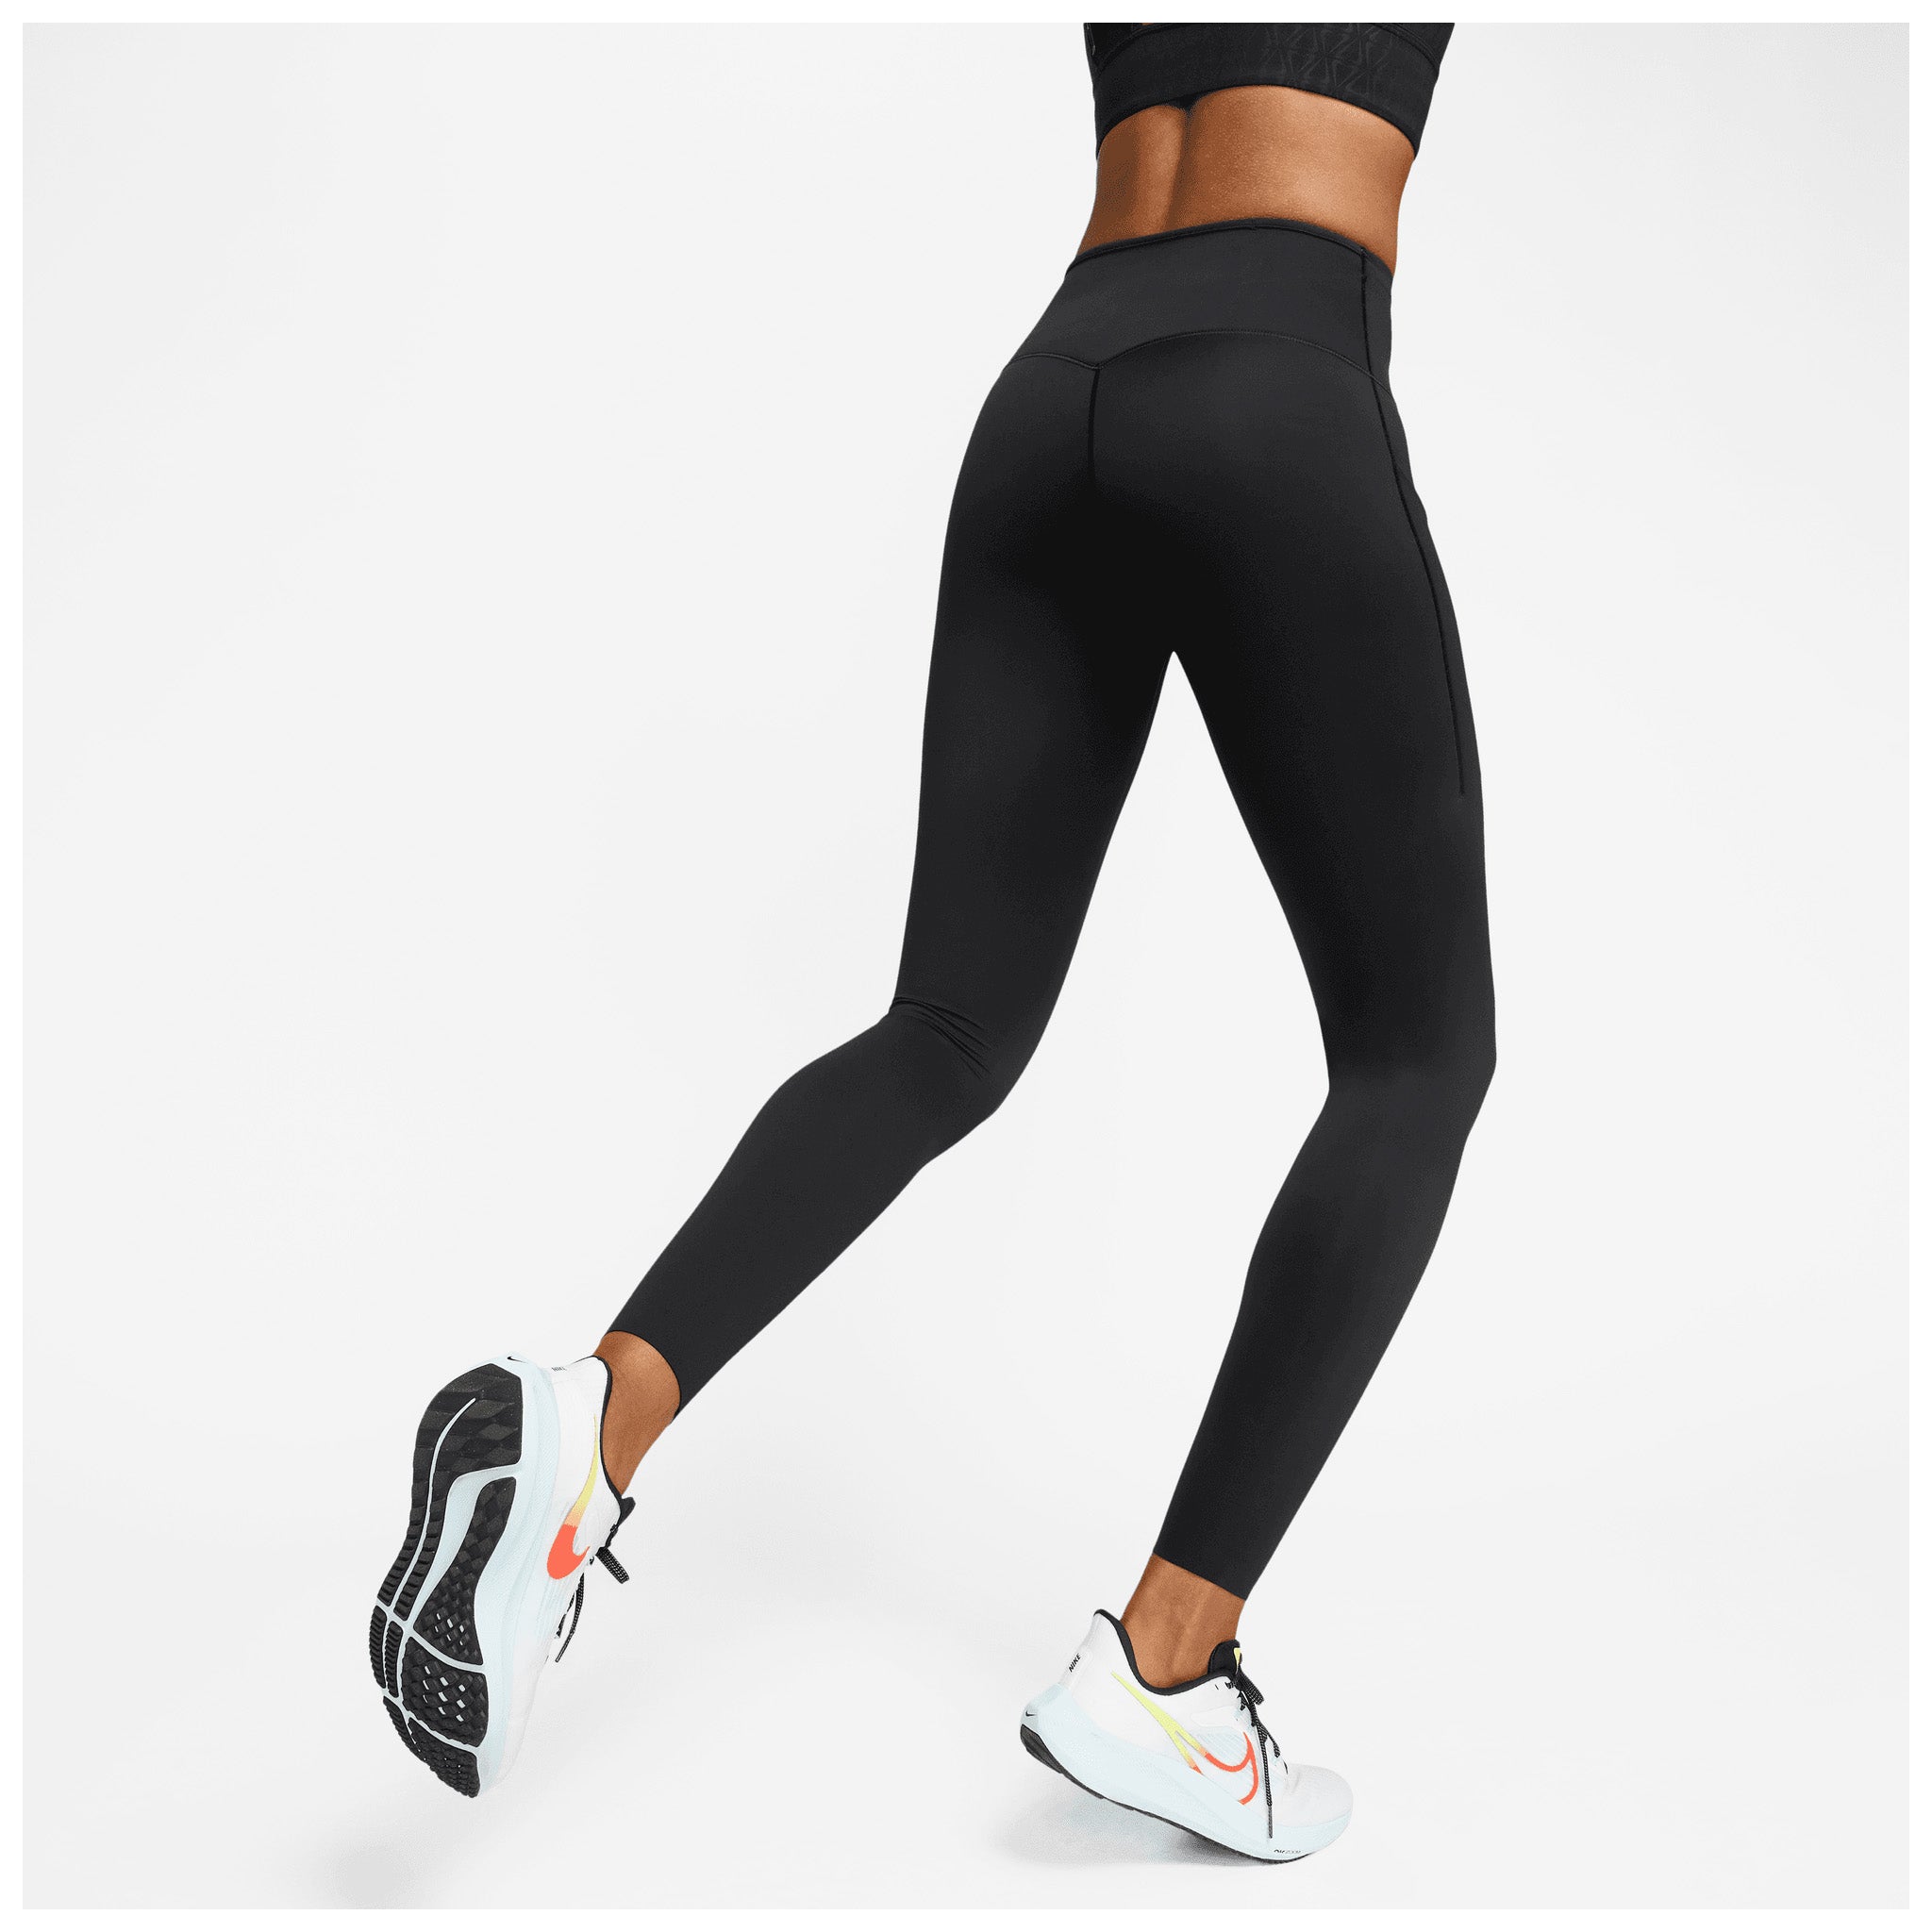 Legging femme Nike Dri-FIT Go - Leggings / Collants - Les Bas - Vêtements  Femme